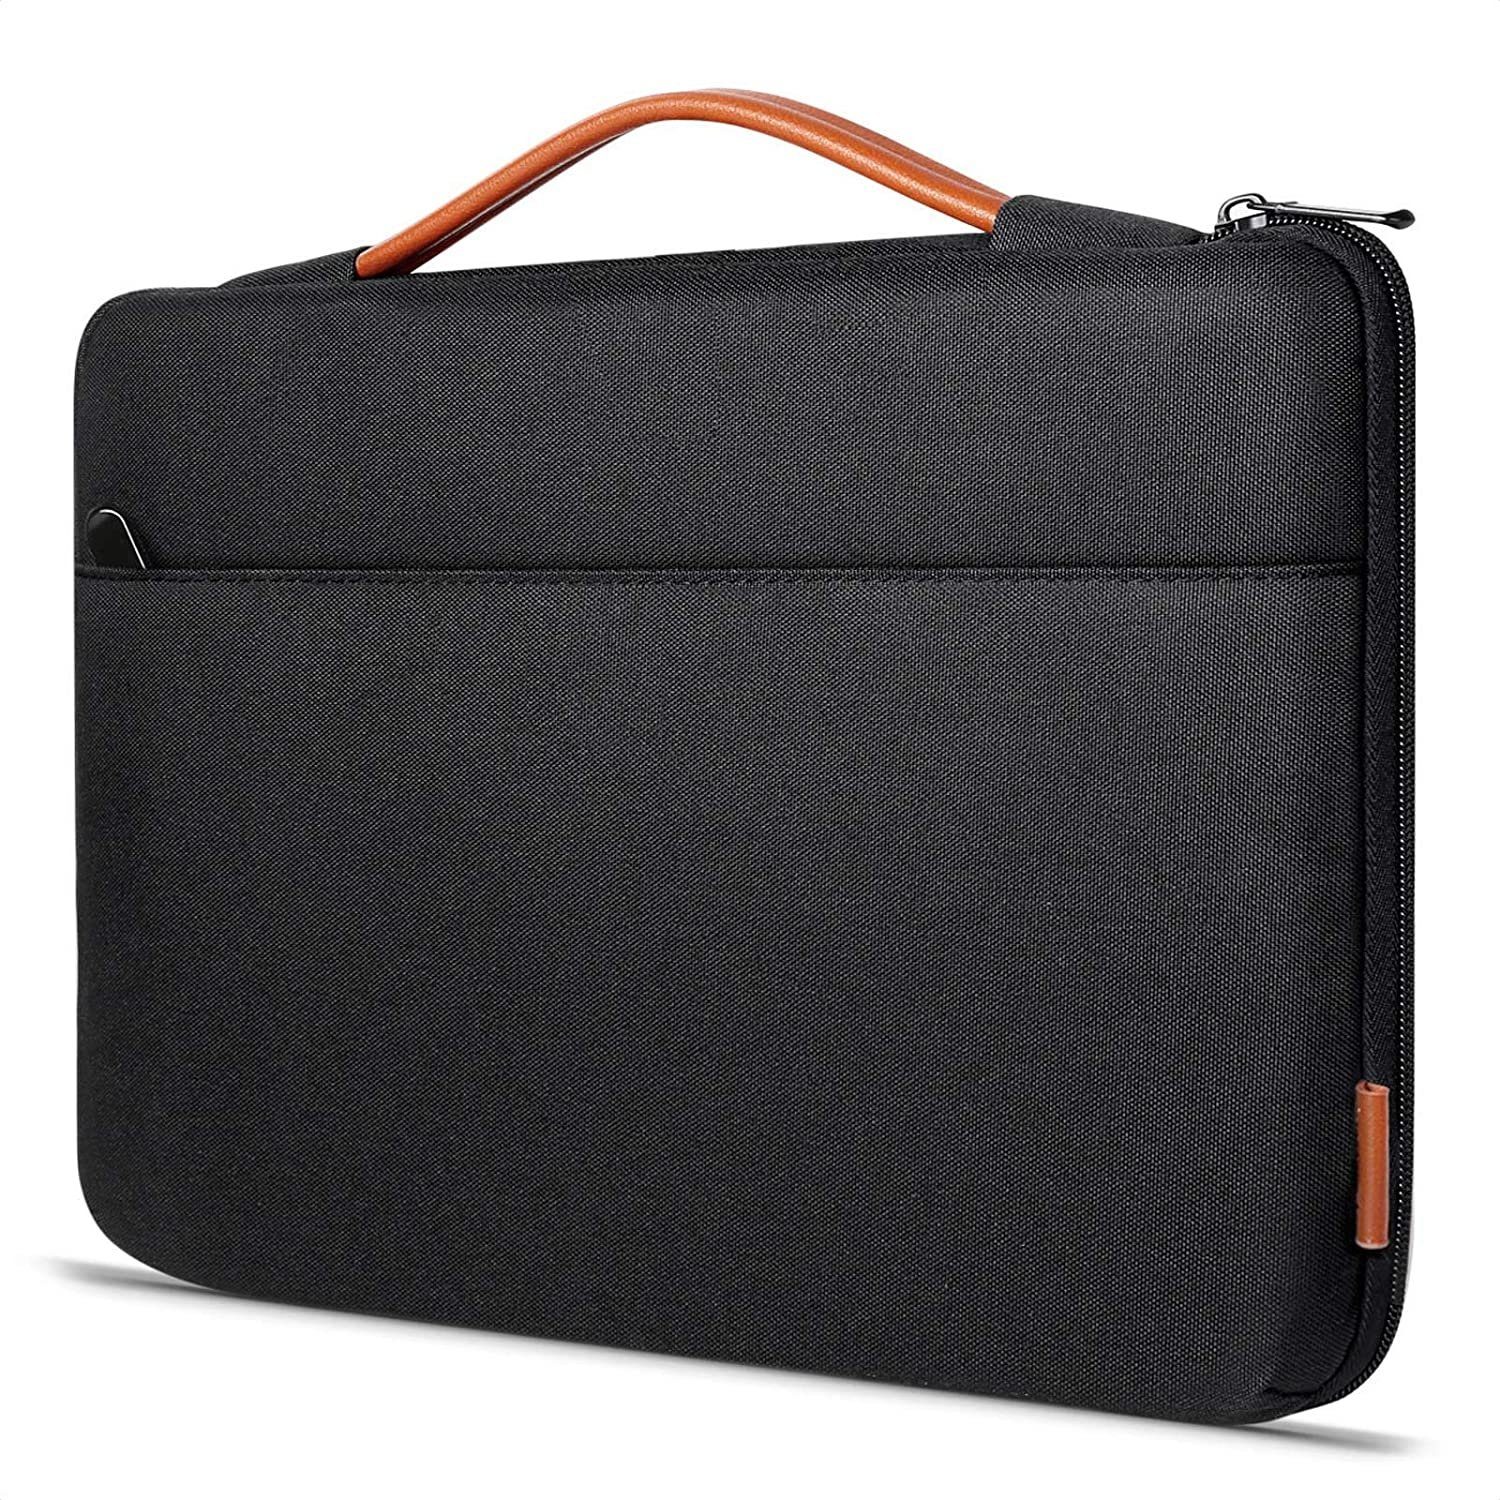 Laptoptasche Notebooktasche NEOPREN LAPTOP HÜLLE Tasche 15.4" 